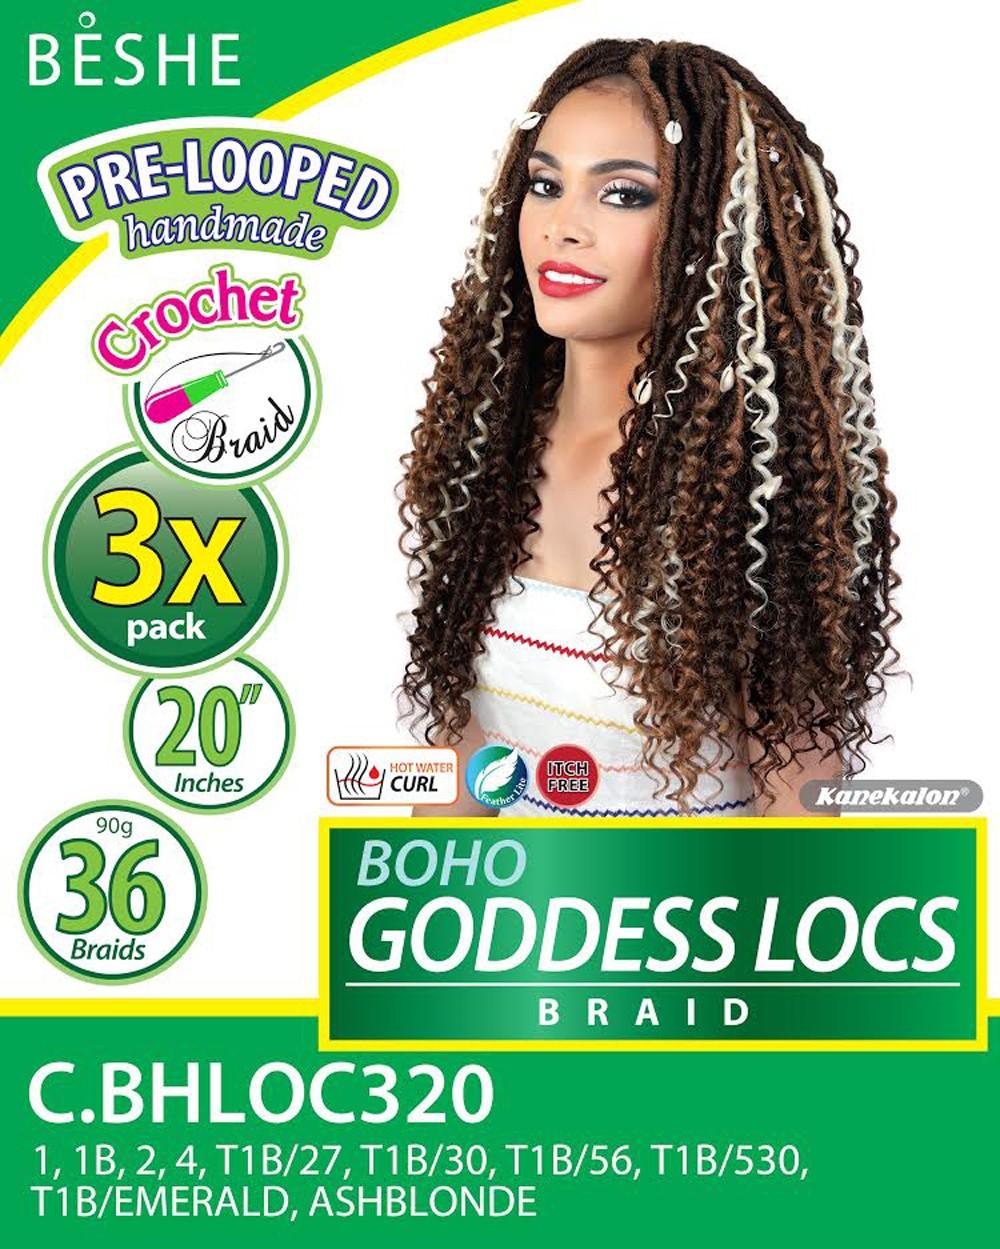 Beshe Crochet 3x Braid Pre-Looped Bulk 20" Boho Goddess Locs C.BHLOC320 - Elevate Styles